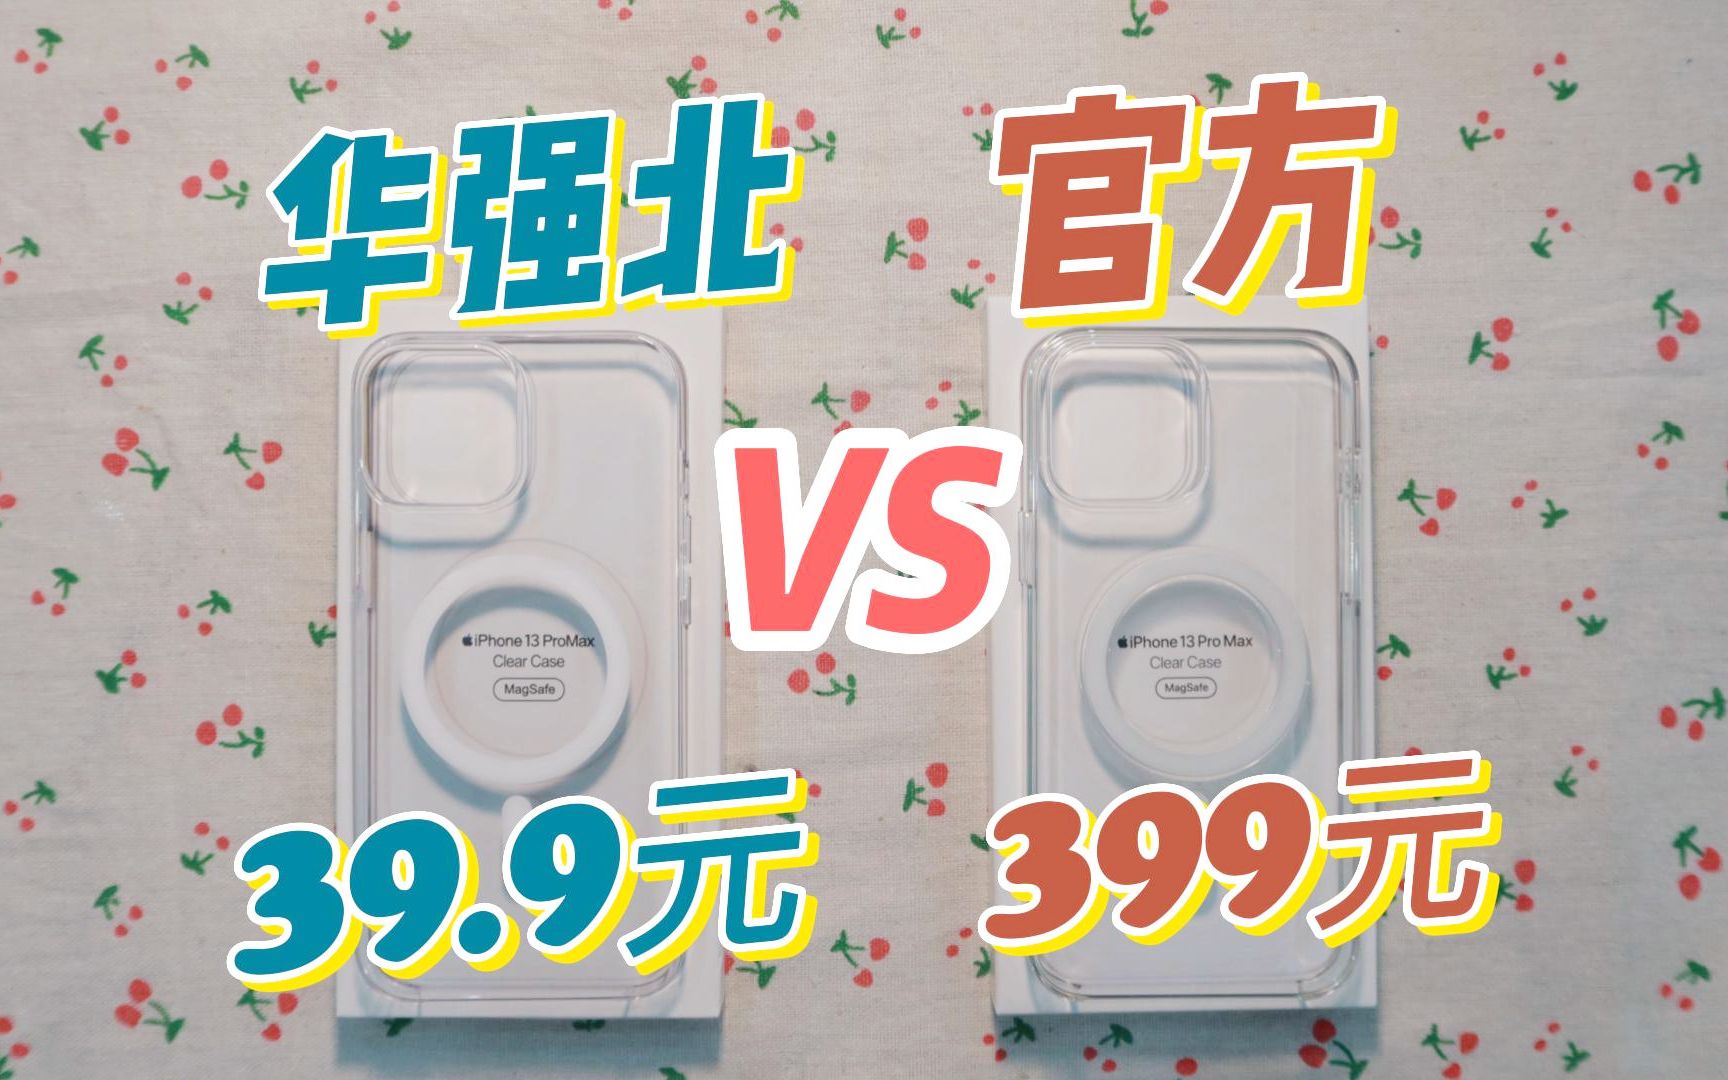 39.9元华强北和399元官方透明壳相比，差了10倍的价格，究竟差在哪里？